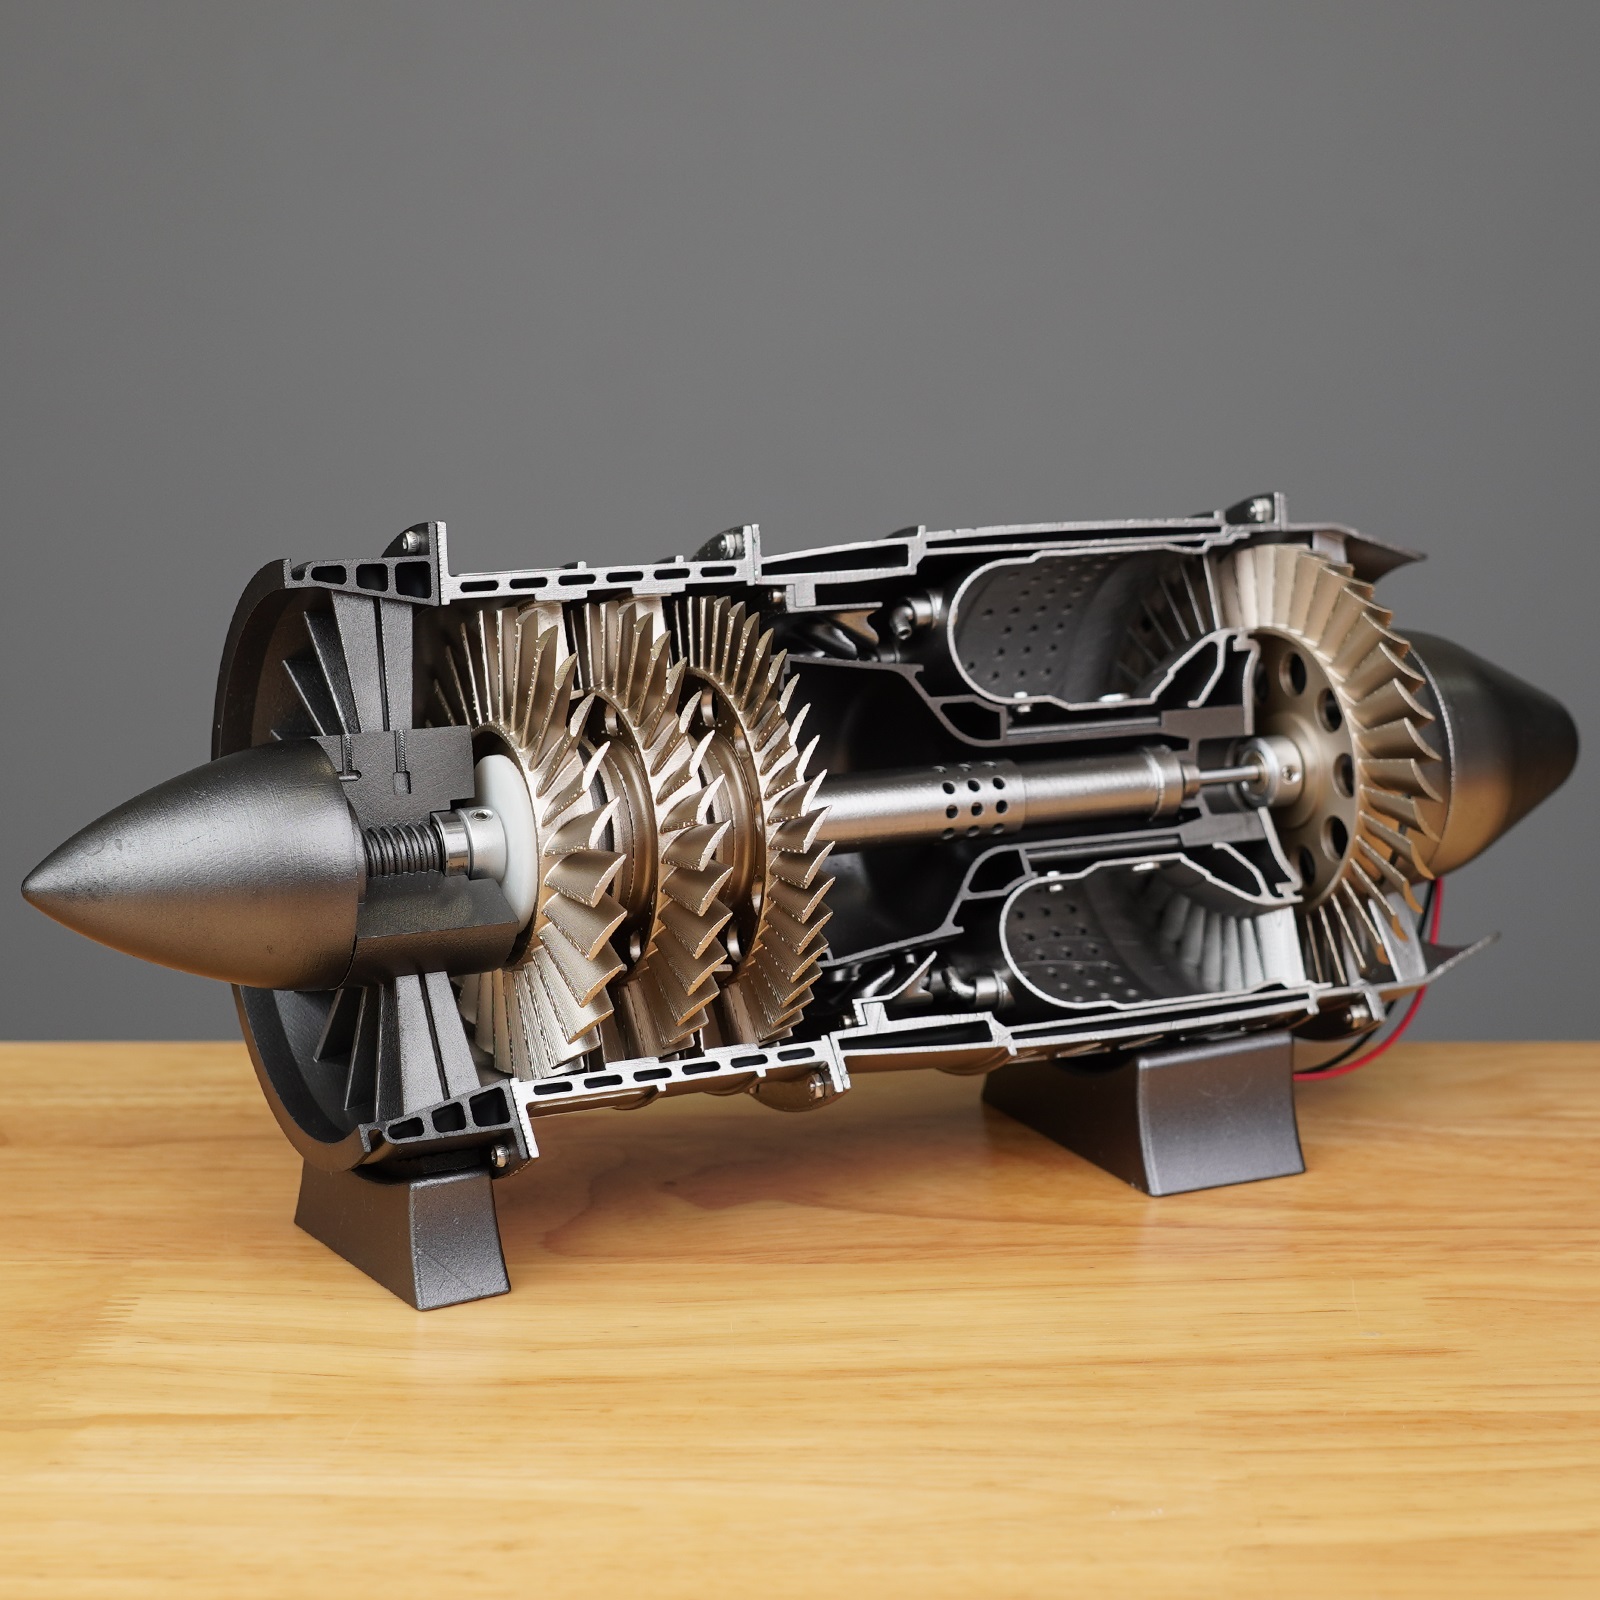 迷你涡喷发动机模型 Engineman战斗机航空 飞机歼20玩具可动拼装